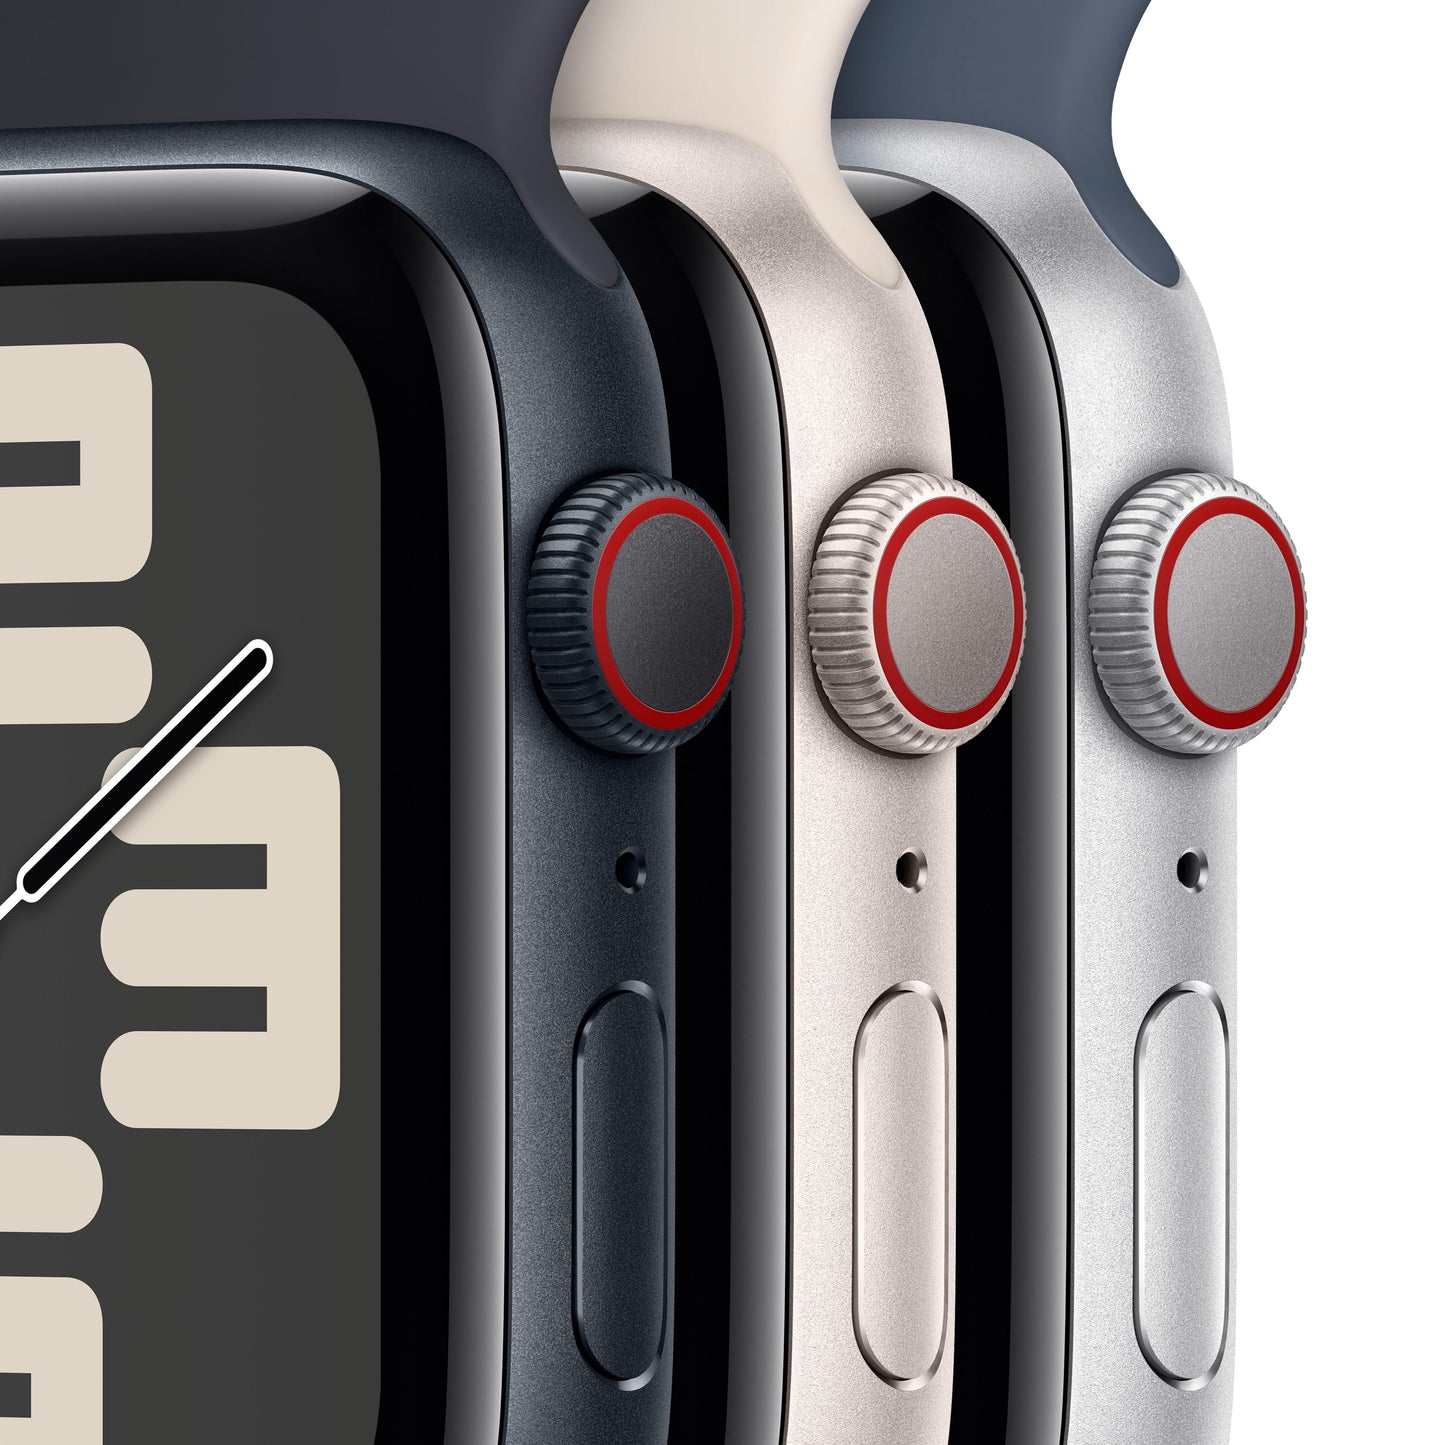 Apple Watch SE (GPS + Cellular) - Caja de aluminio en blanco estrella de 44 mm - Correa deportiva blanco estrella - Talla S/M